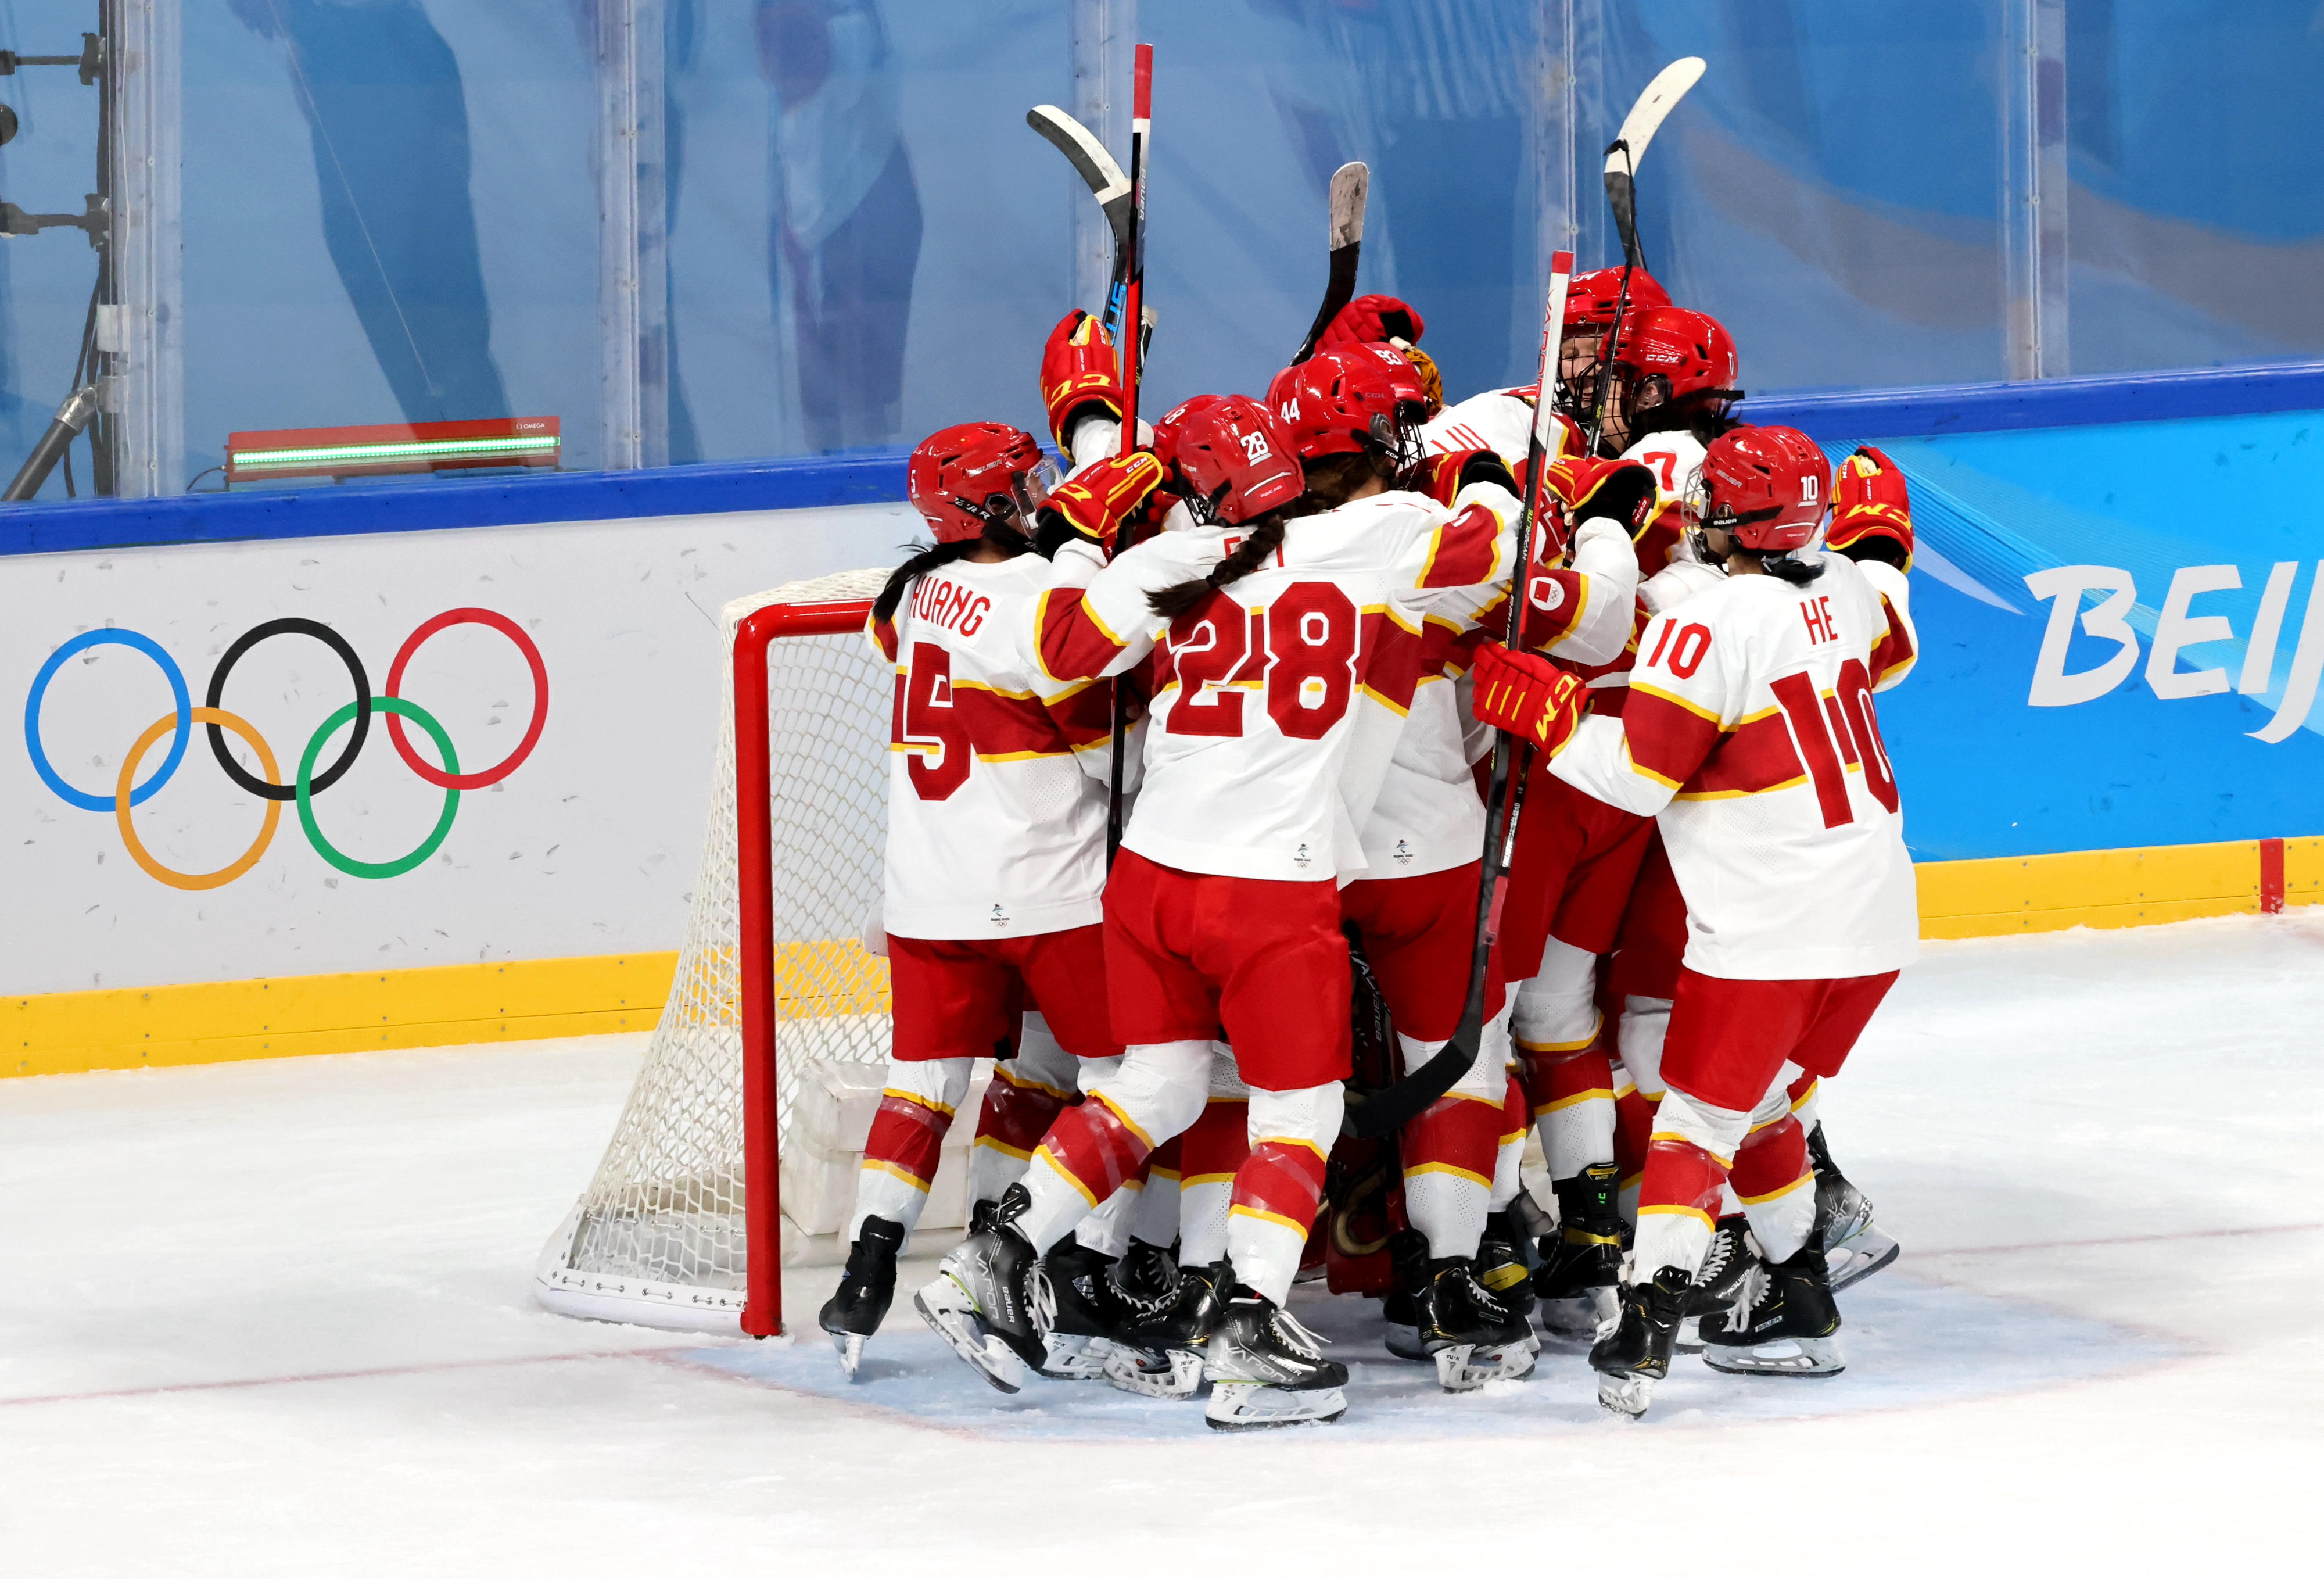 冰球成为北京冬奥会上最受俄罗斯人喜爱的体育项目 - 2022年2月23日, 俄罗斯卫星通讯社